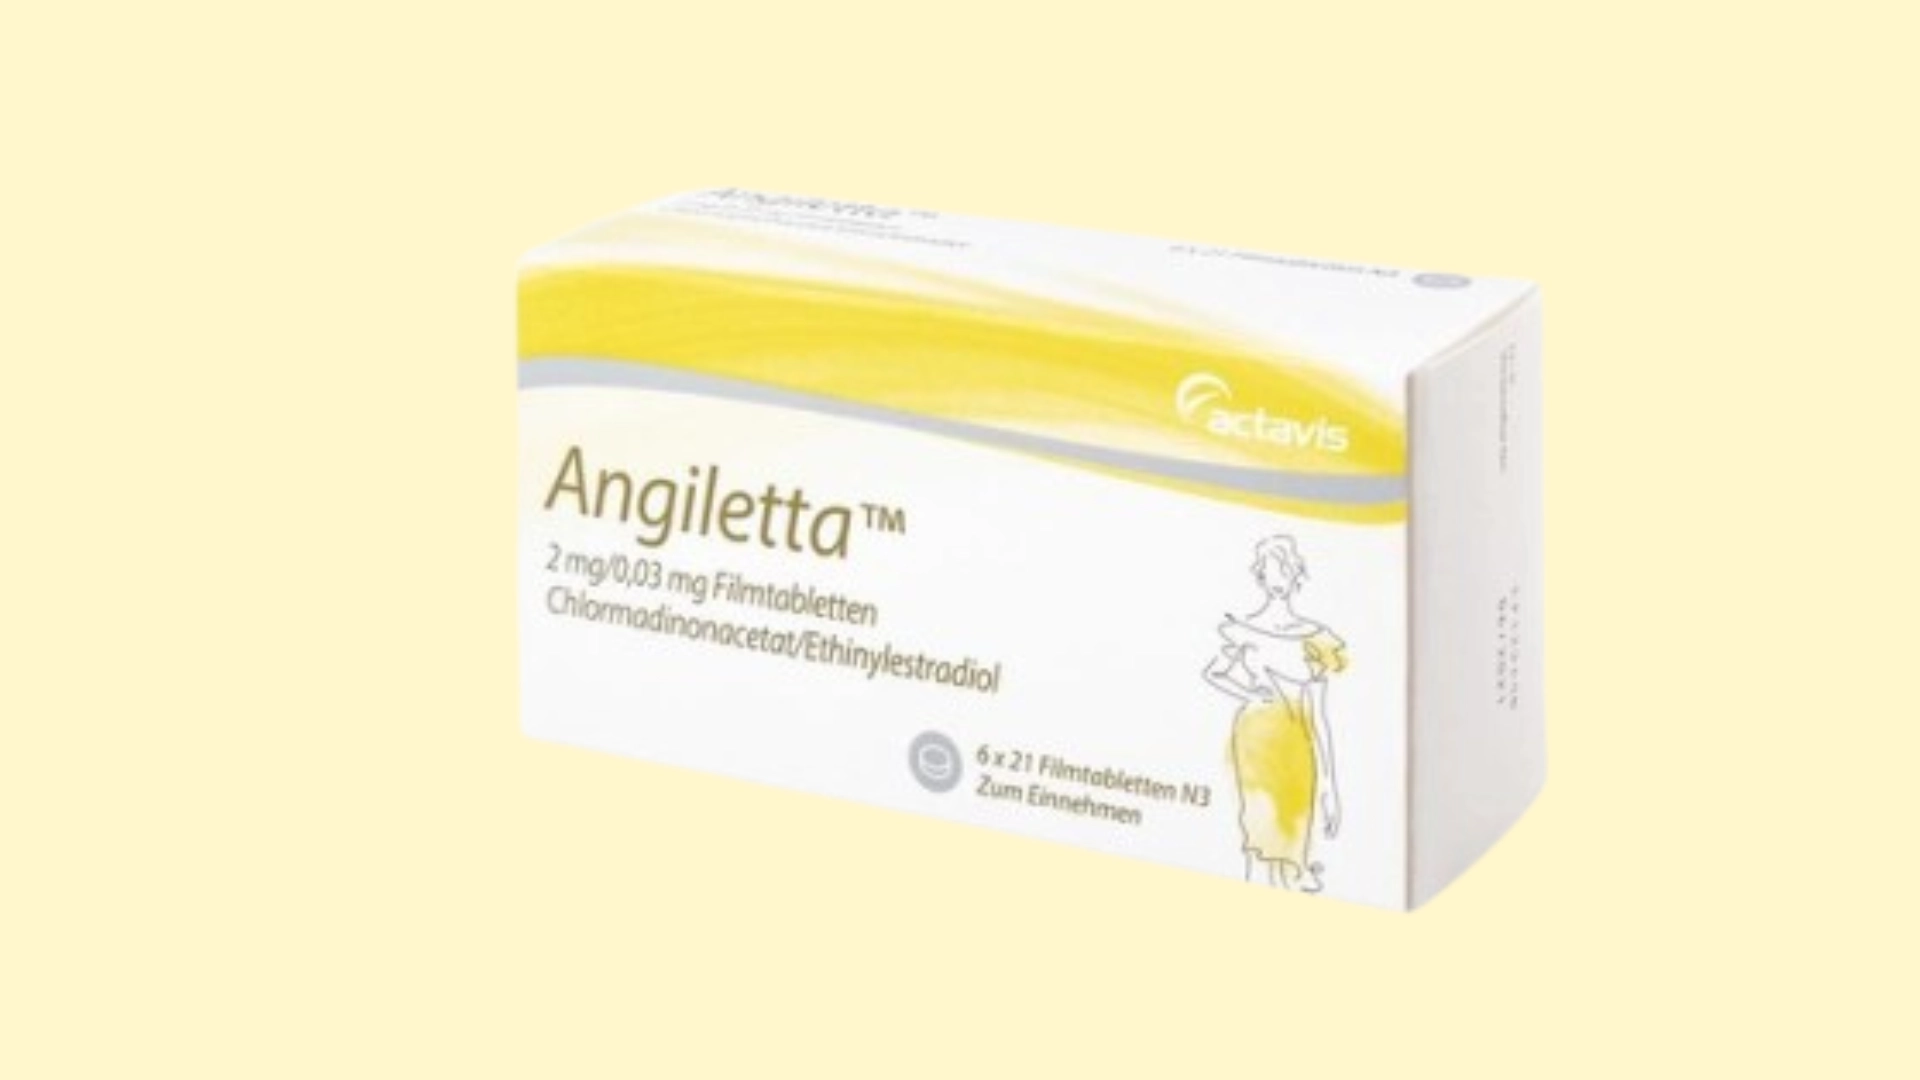 Angiletta - E-recepta - recepta online z konsultacją | cena, dawkowanie, przeciwwskazania